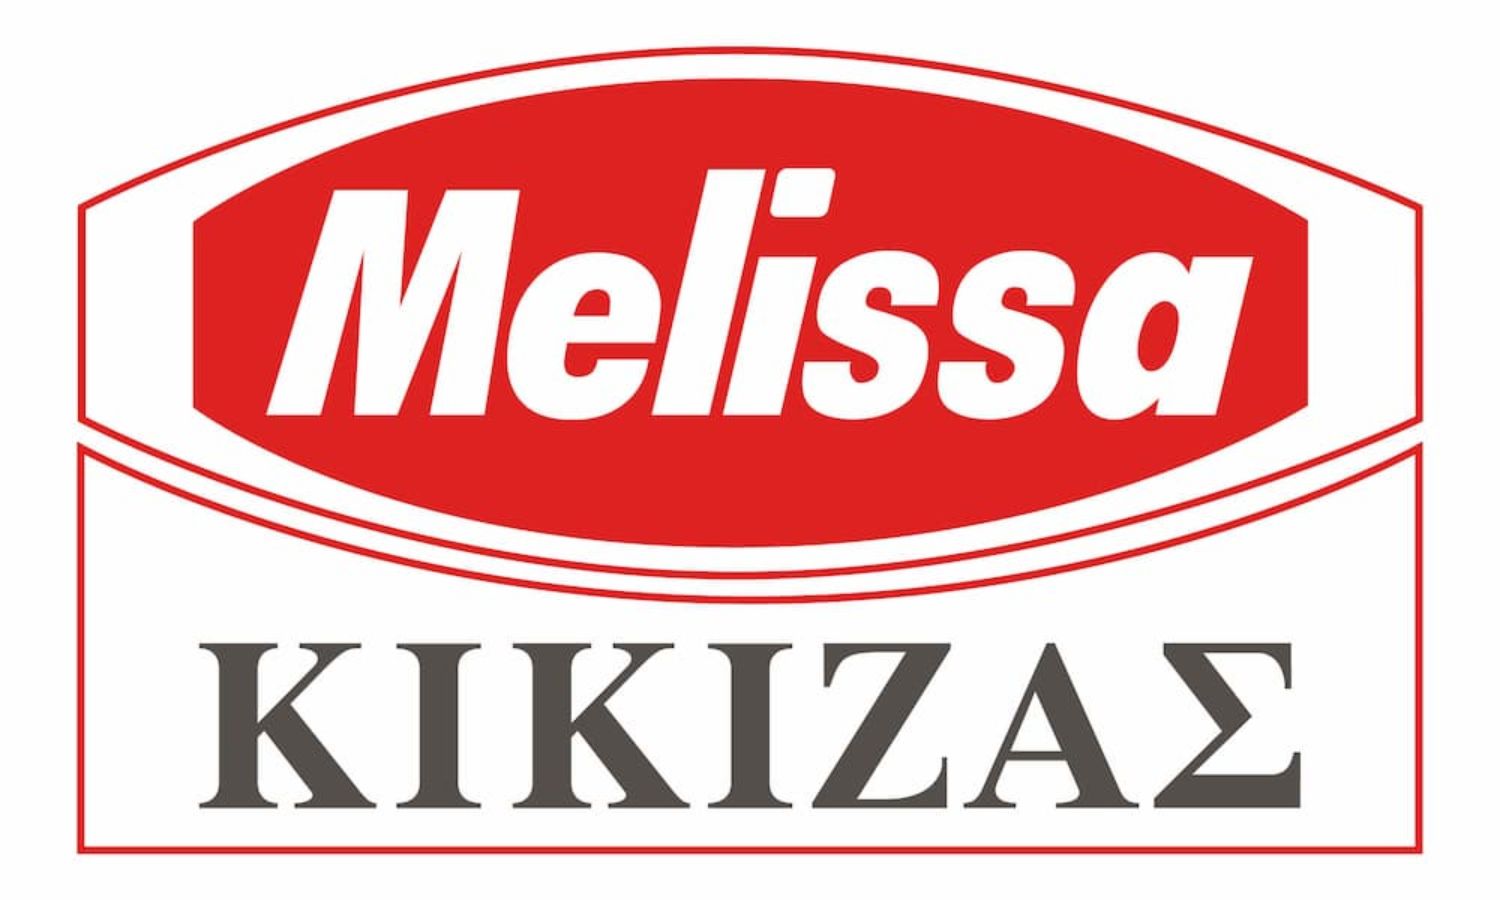 Melissa Kikizas SA